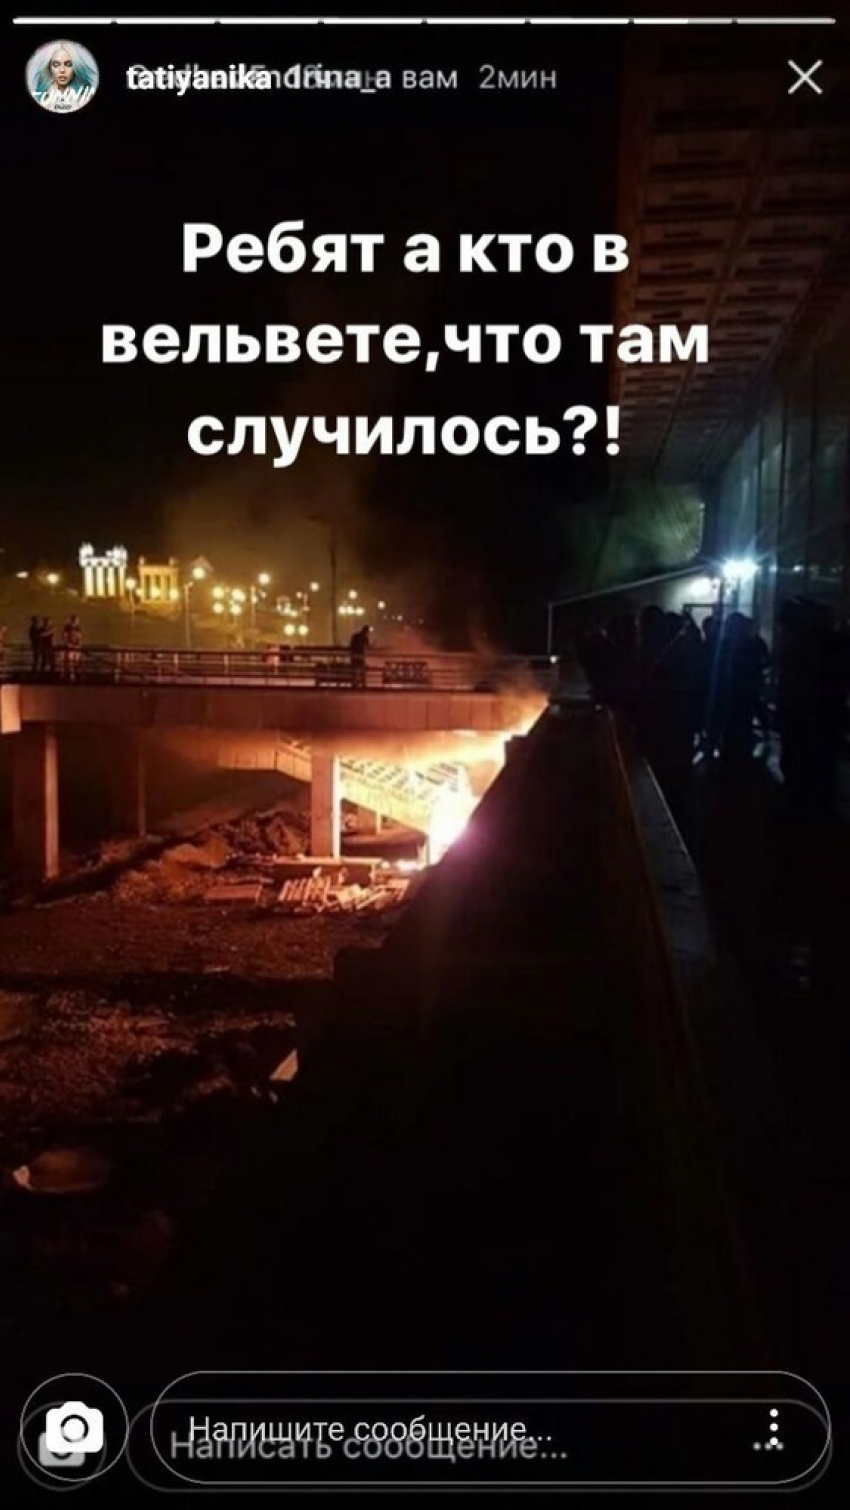 В речпорту Волгограда ночью произошёл пожар 